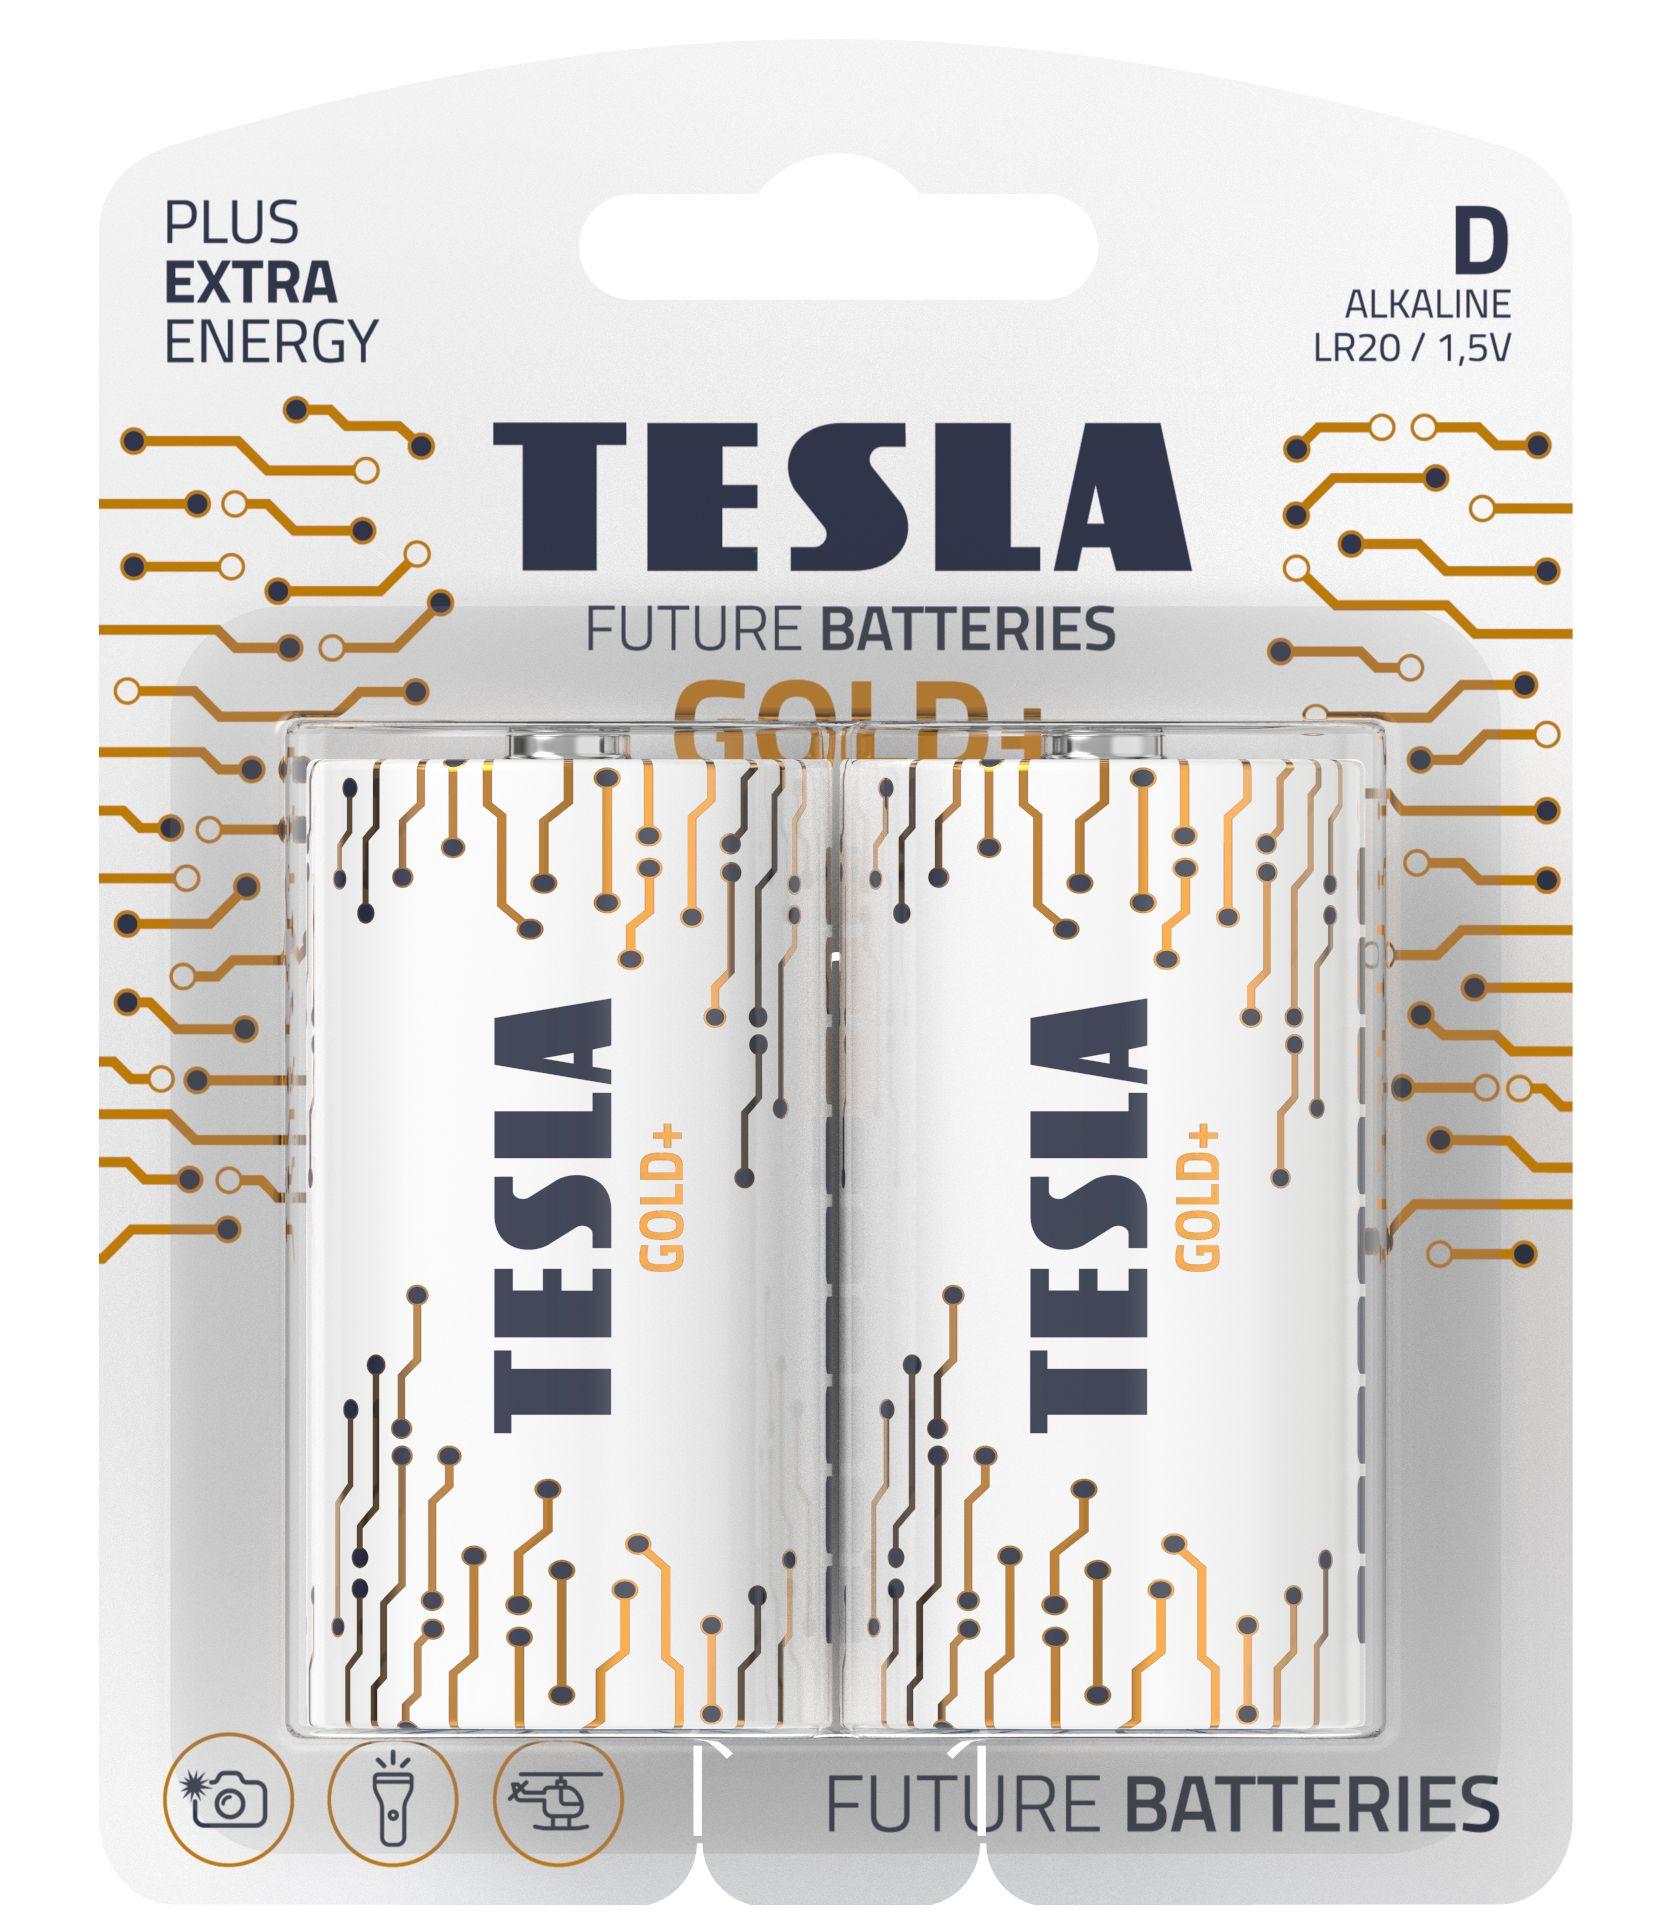 Alkaline batteries TESLA D/LR20/1,5V 2pcs GOLD+